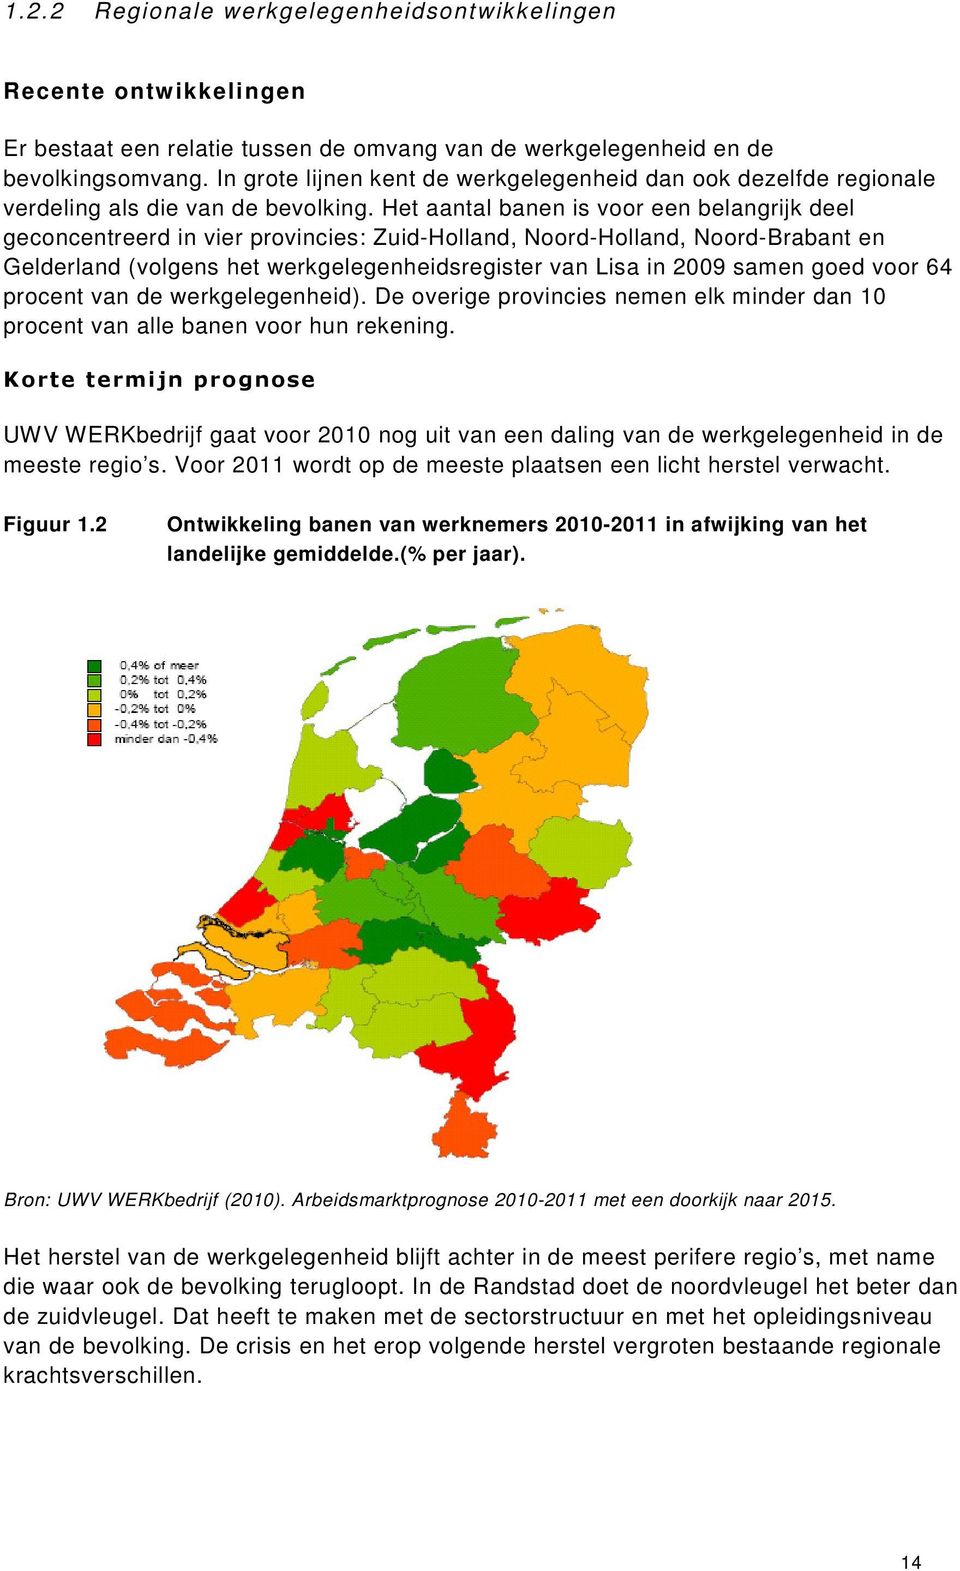 Het aantal banen is voor een belangrijk deel geconcentreerd in vier provincies: Zuid-Holland, Noord-Holland, Noord-Brabant en Gelderland (volgens het werkgelegenheidsregister van Lisa in 2009 samen